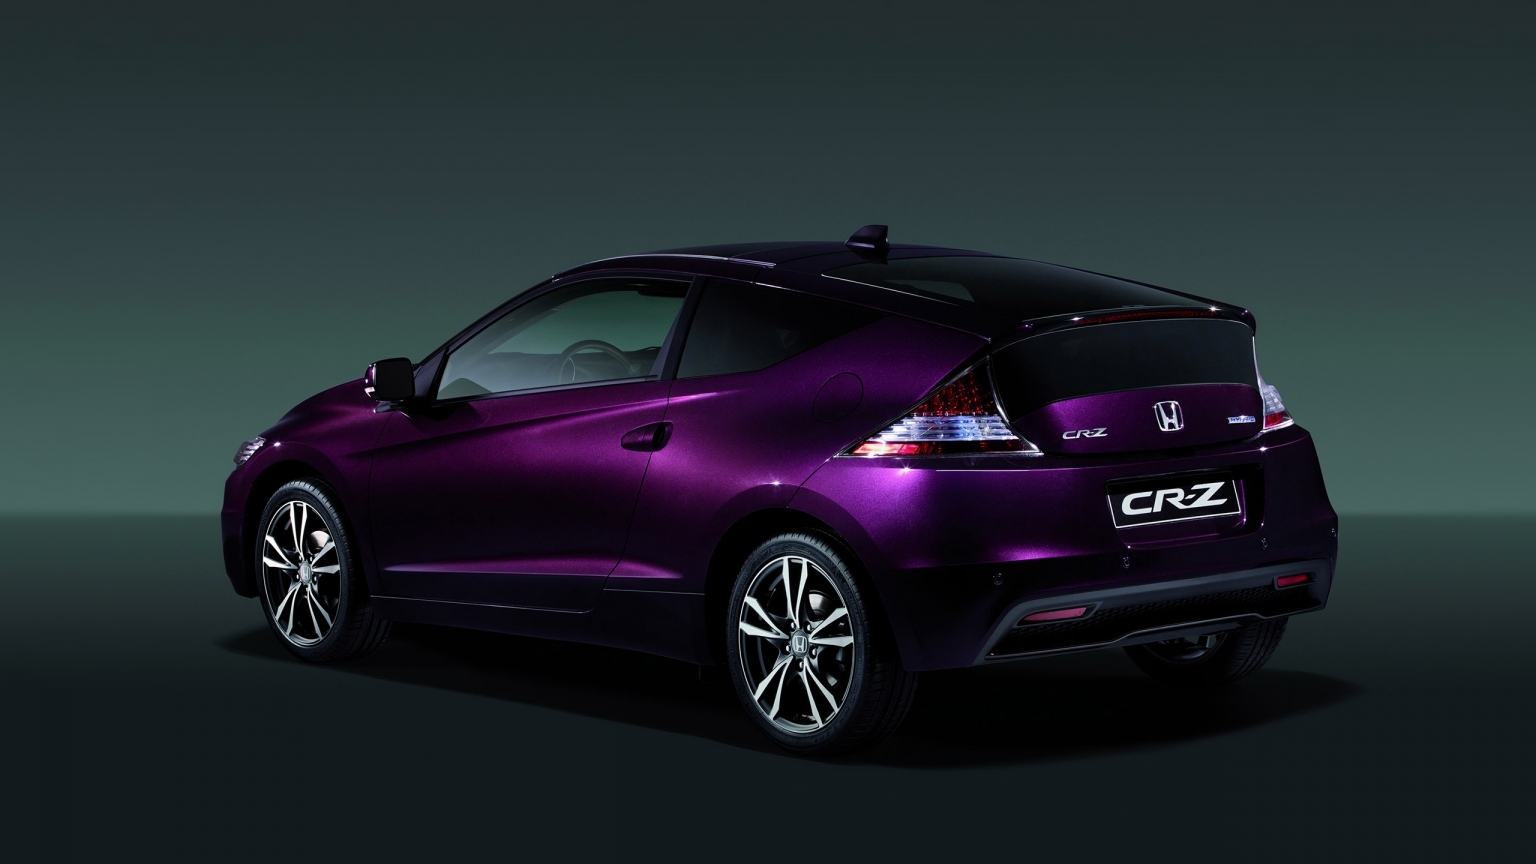 2013 Honda CR-Z Hybrid for 1536 x 864 HDTV resolution